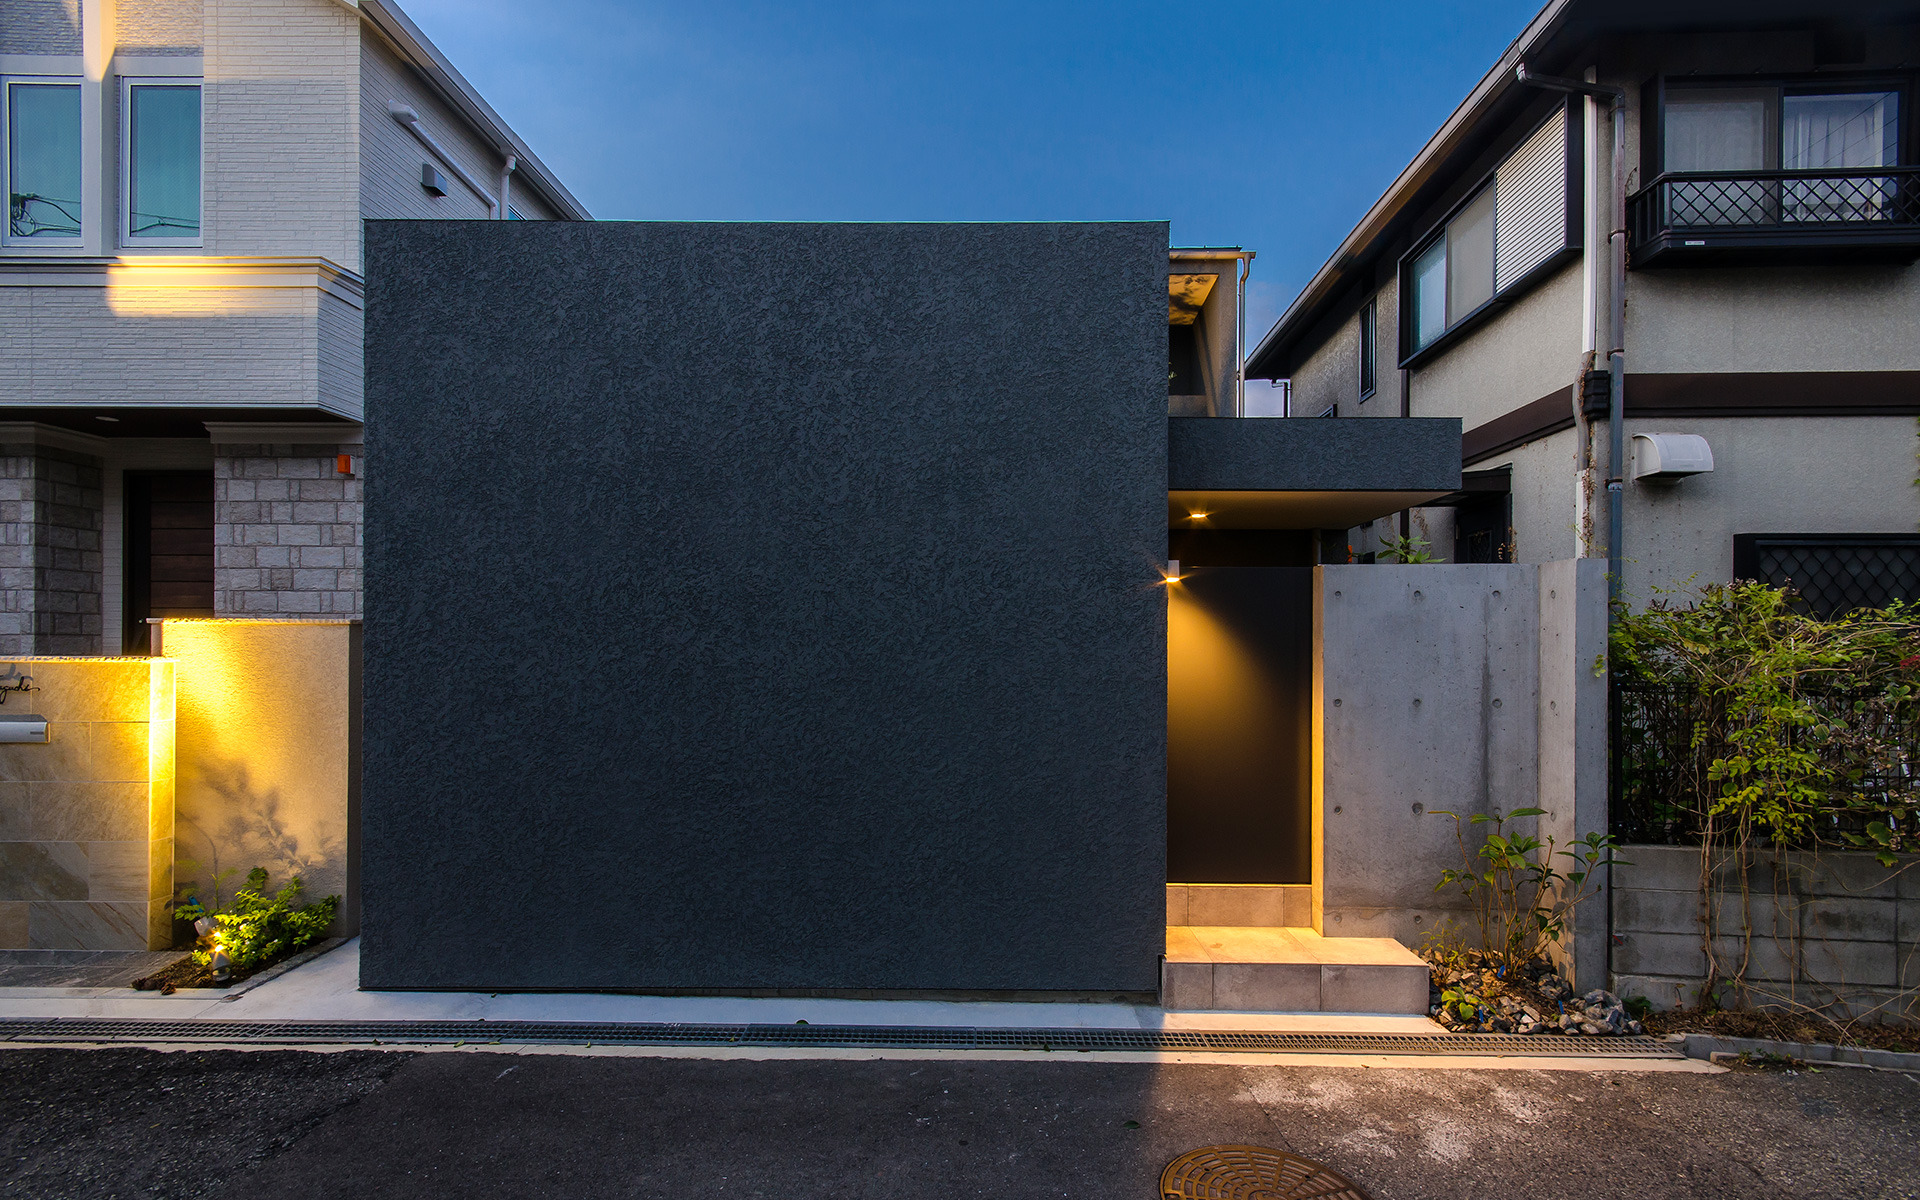 神戸市の御影に建つコートハウス、中庭のある家、夕景の外観写真